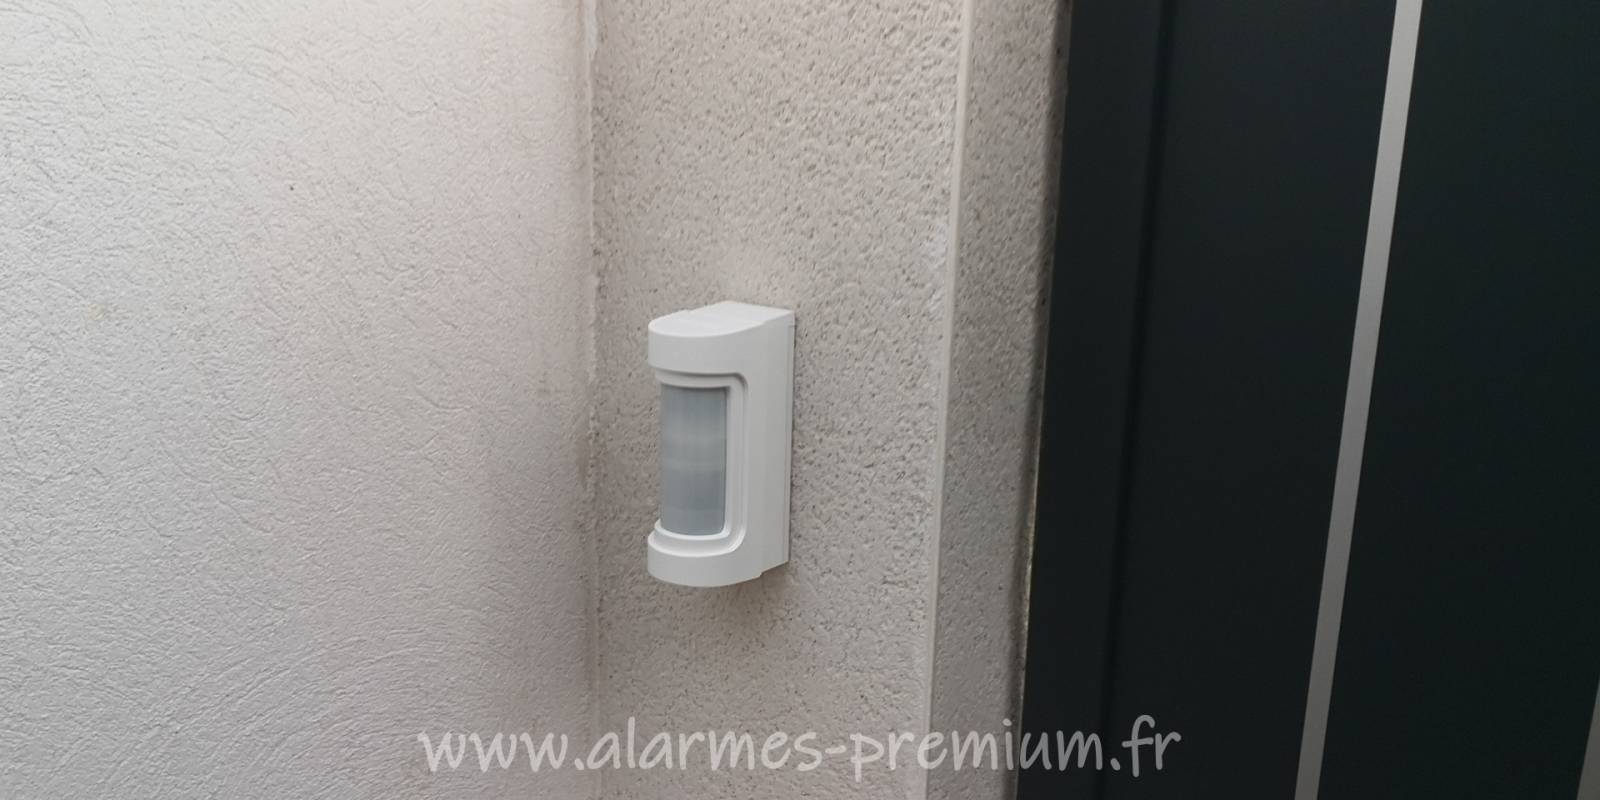 Vente et installation d'une alarme sans fil  avec détection extérieure pour villa à Garons prés de Nîmes